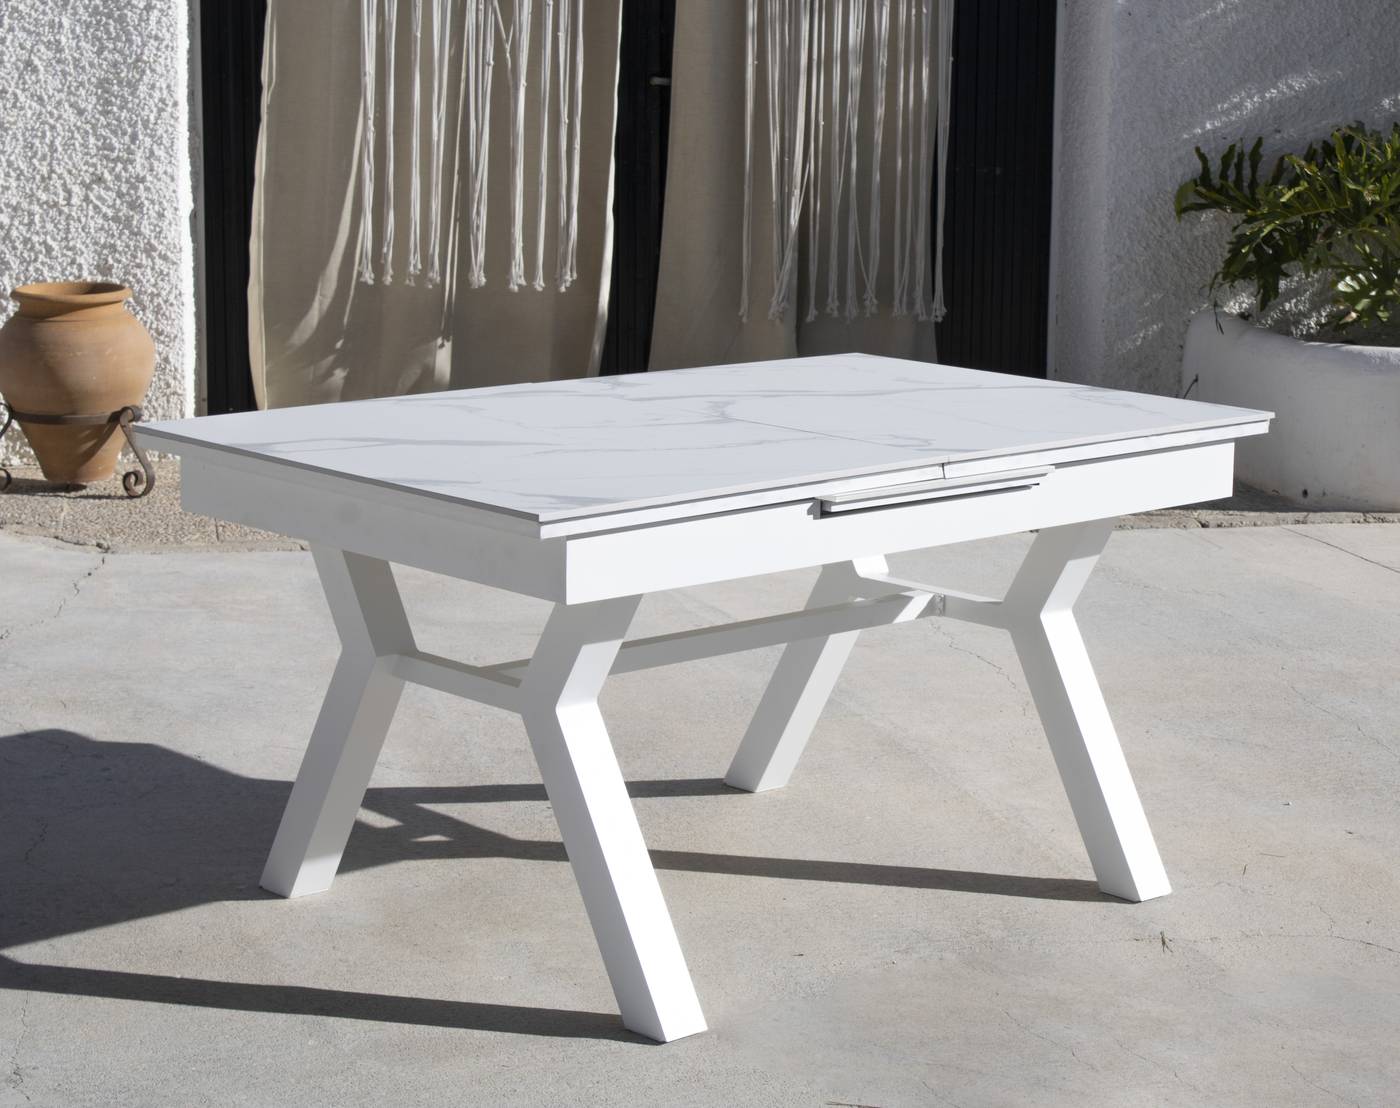 Mesa de aluminio extensible de 170 a 220 cm, con tablero fenólico de alta calidad. Disponible en varios colores.